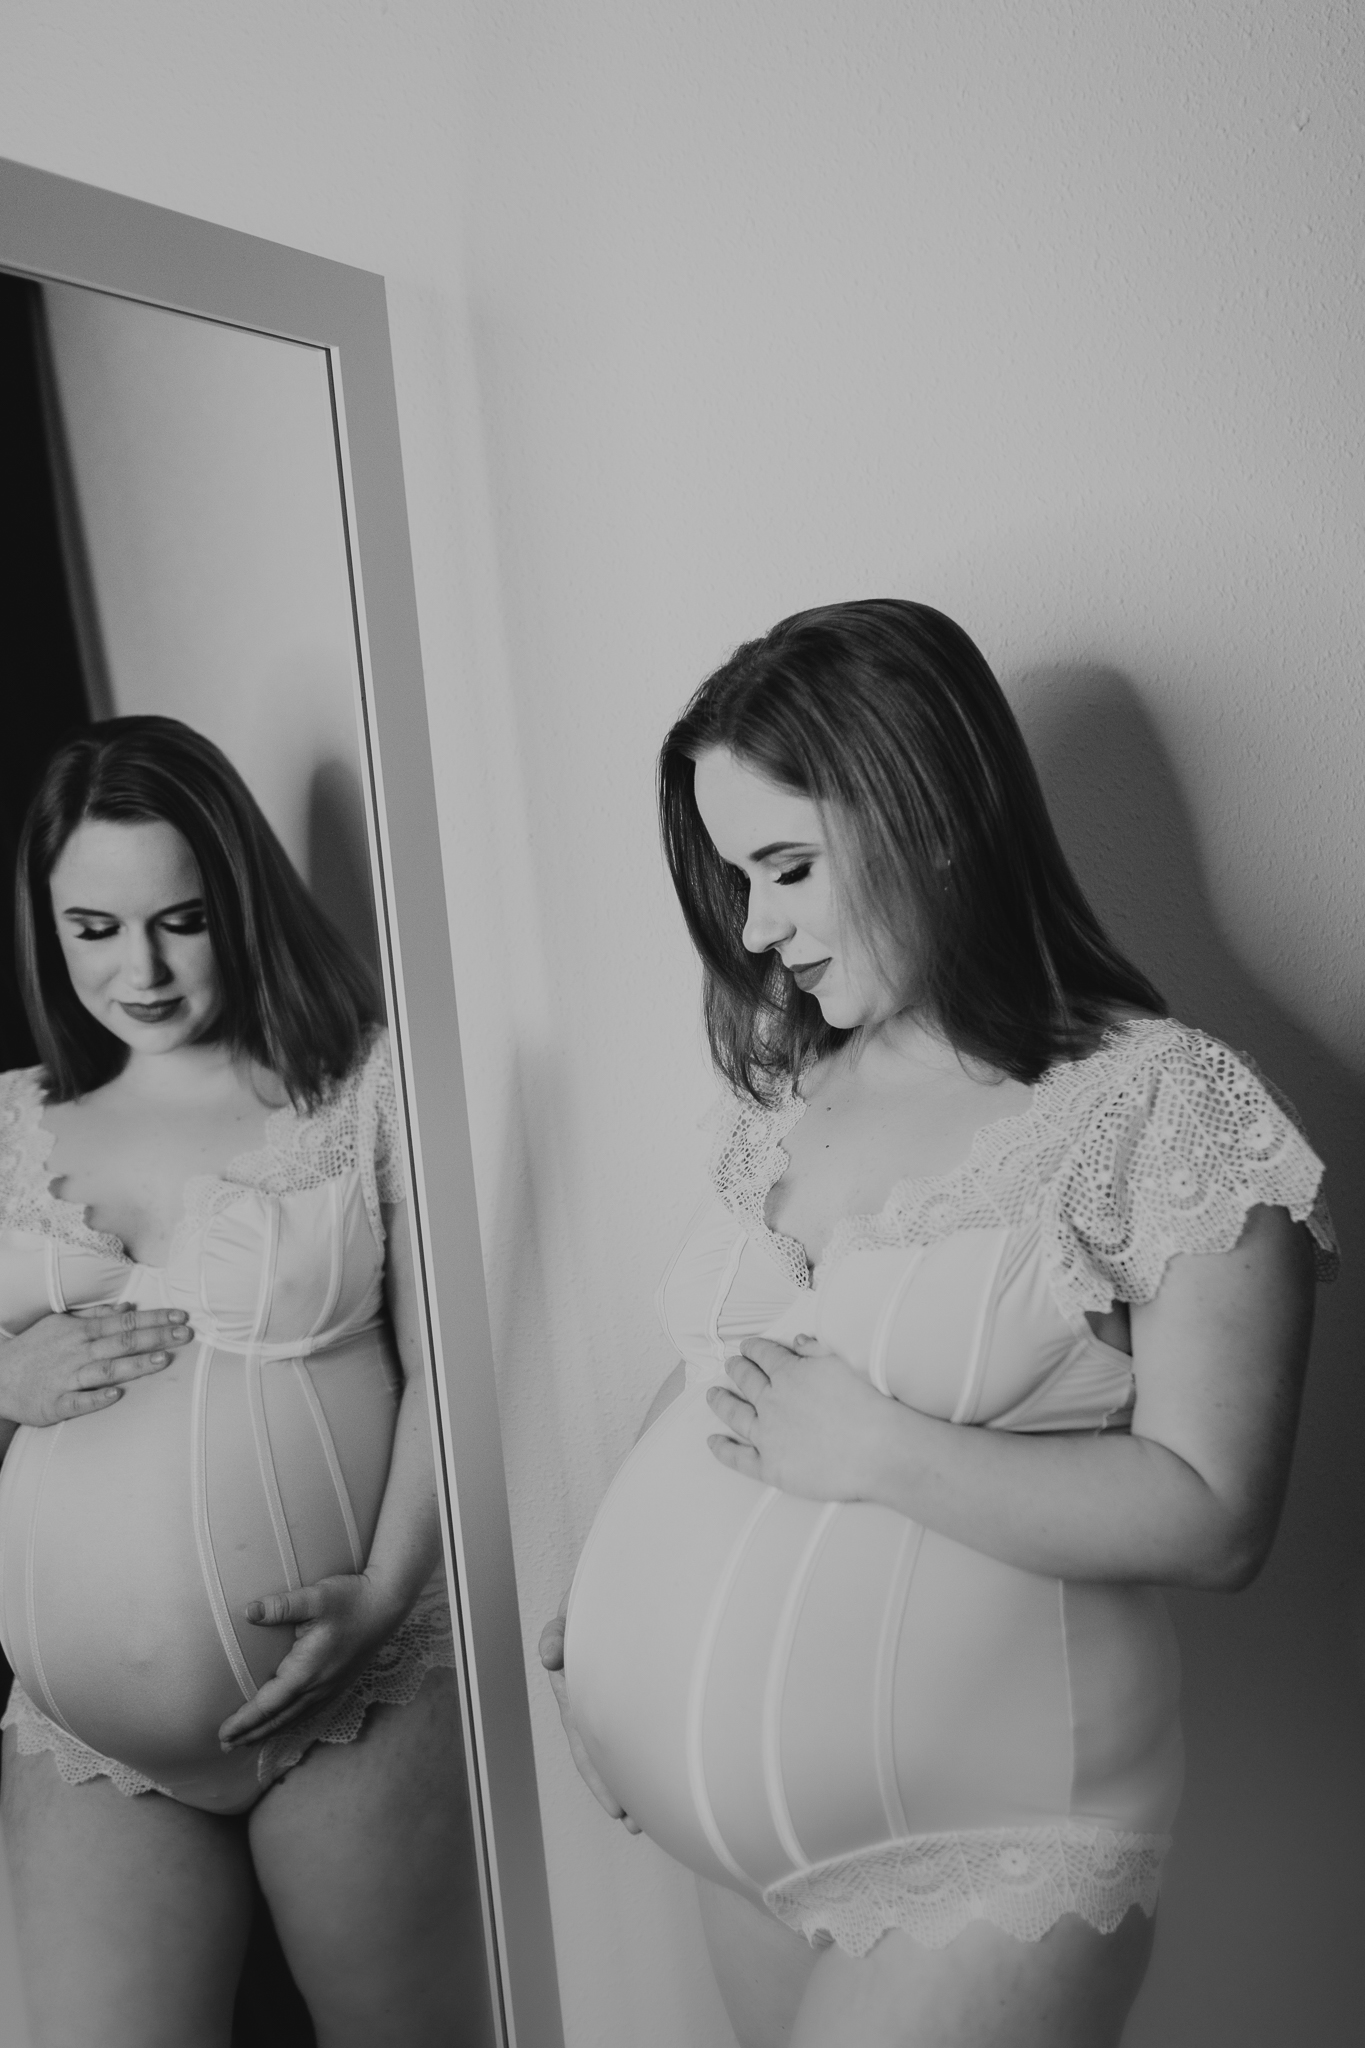 Kobieta w ciąży oparta o ścianę spogląda w swoje odbicie lustrzane